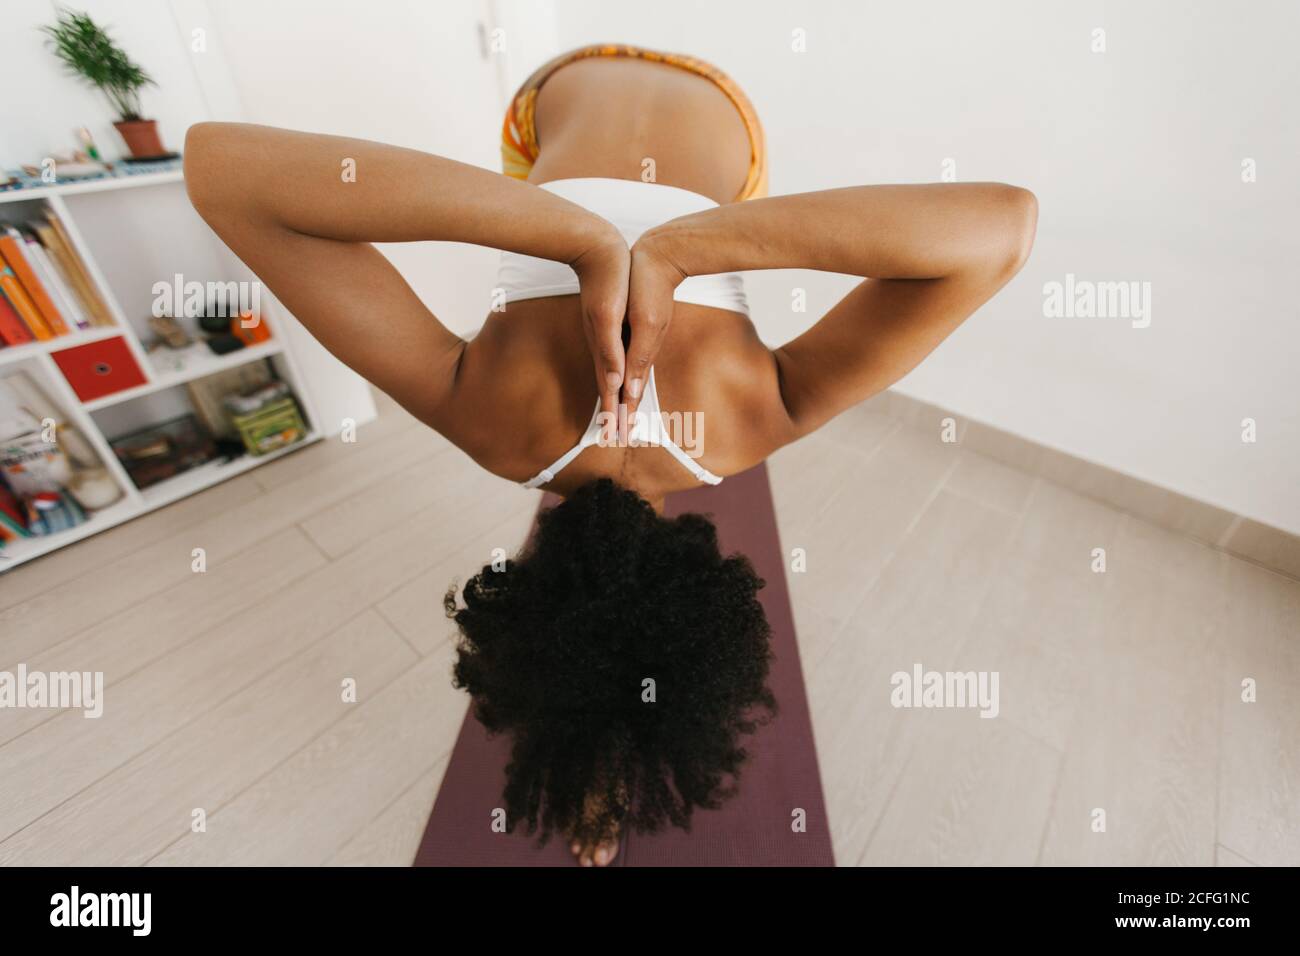 Vue arrière de l'anonyme afro-américaine jeune femme attrayante exécutant la posture de yoga avec les mains repliées derrière le dos dans la pièce lumineuse Banque D'Images